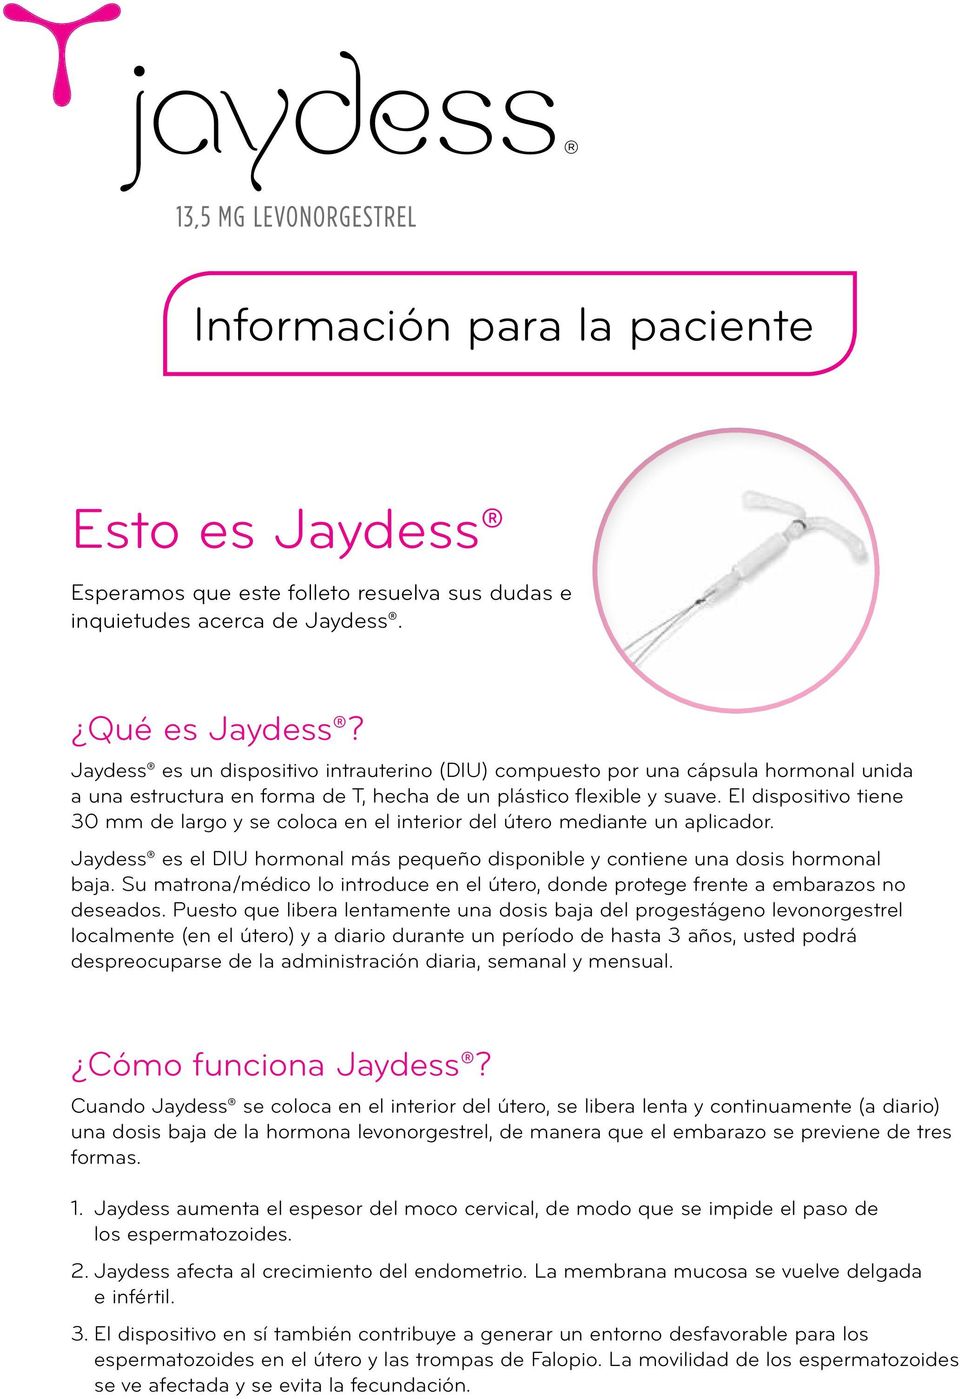 El dispositivo tiene 30 mm de largo y se coloca en el interior del útero mediante un aplicador. Jaydess es el DIU hormonal más pequeño disponible y contiene una dosis hormonal baja.